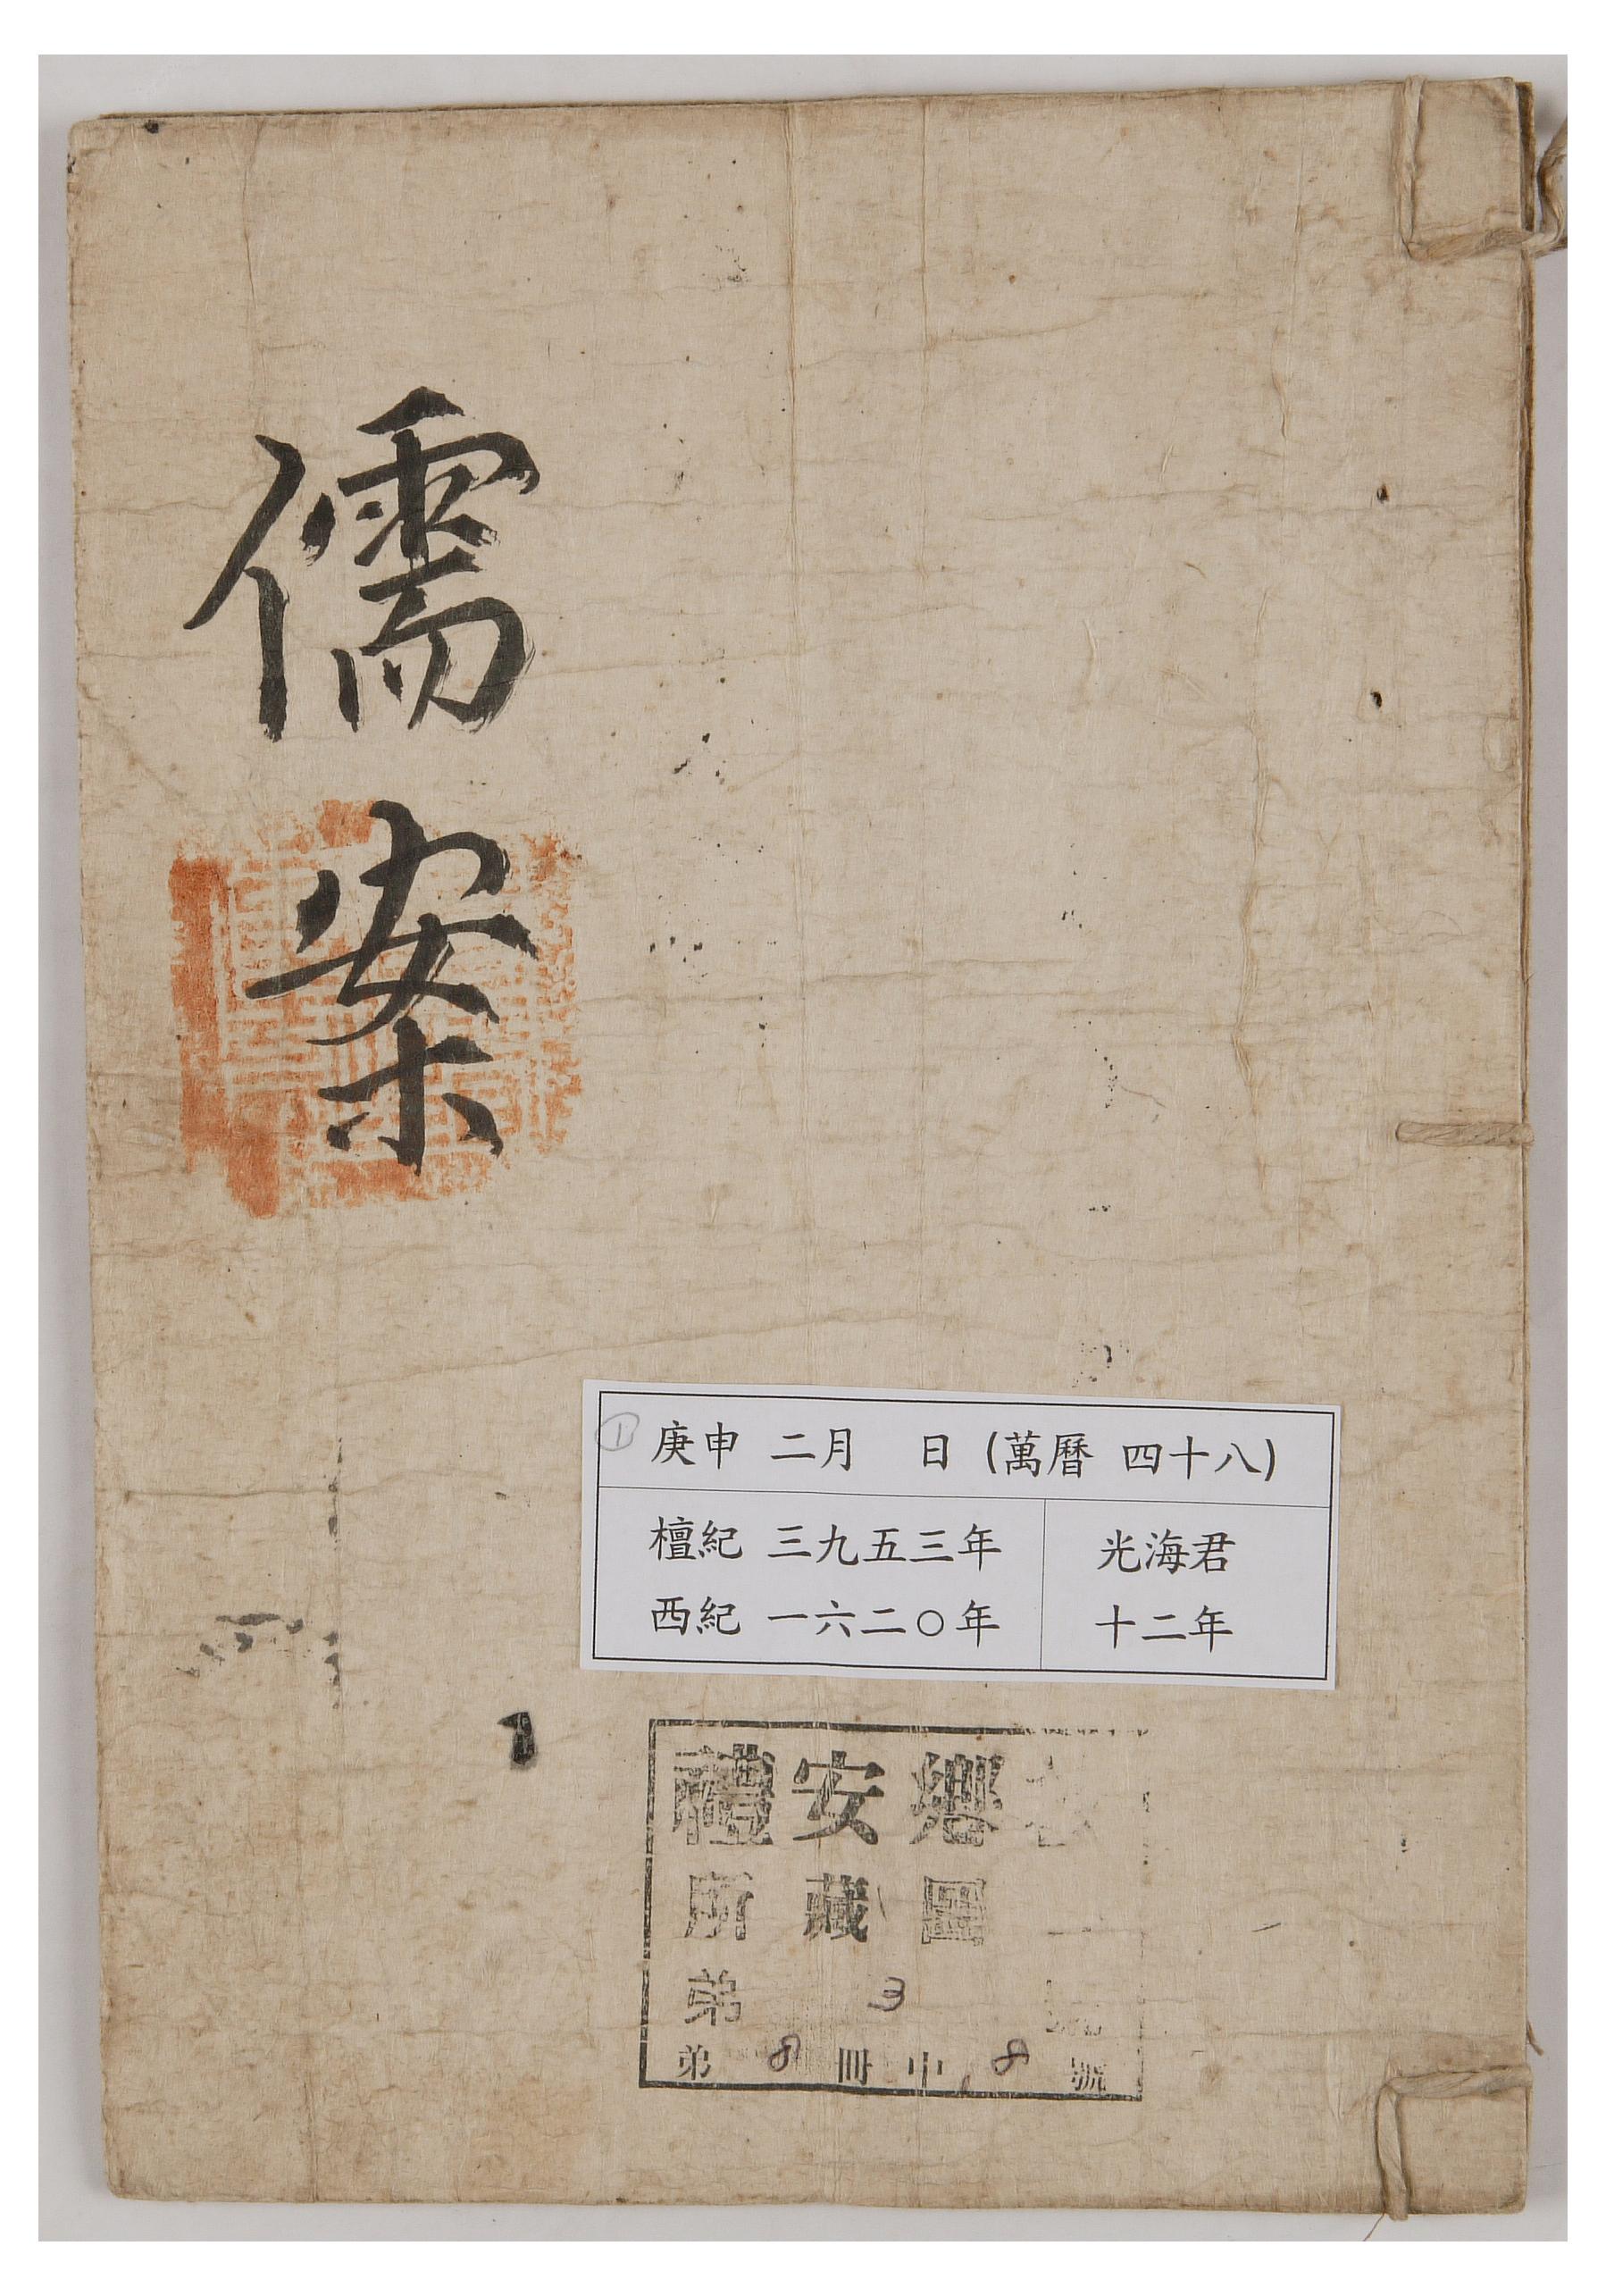 1620년에 예안향교에서 작성한 유안